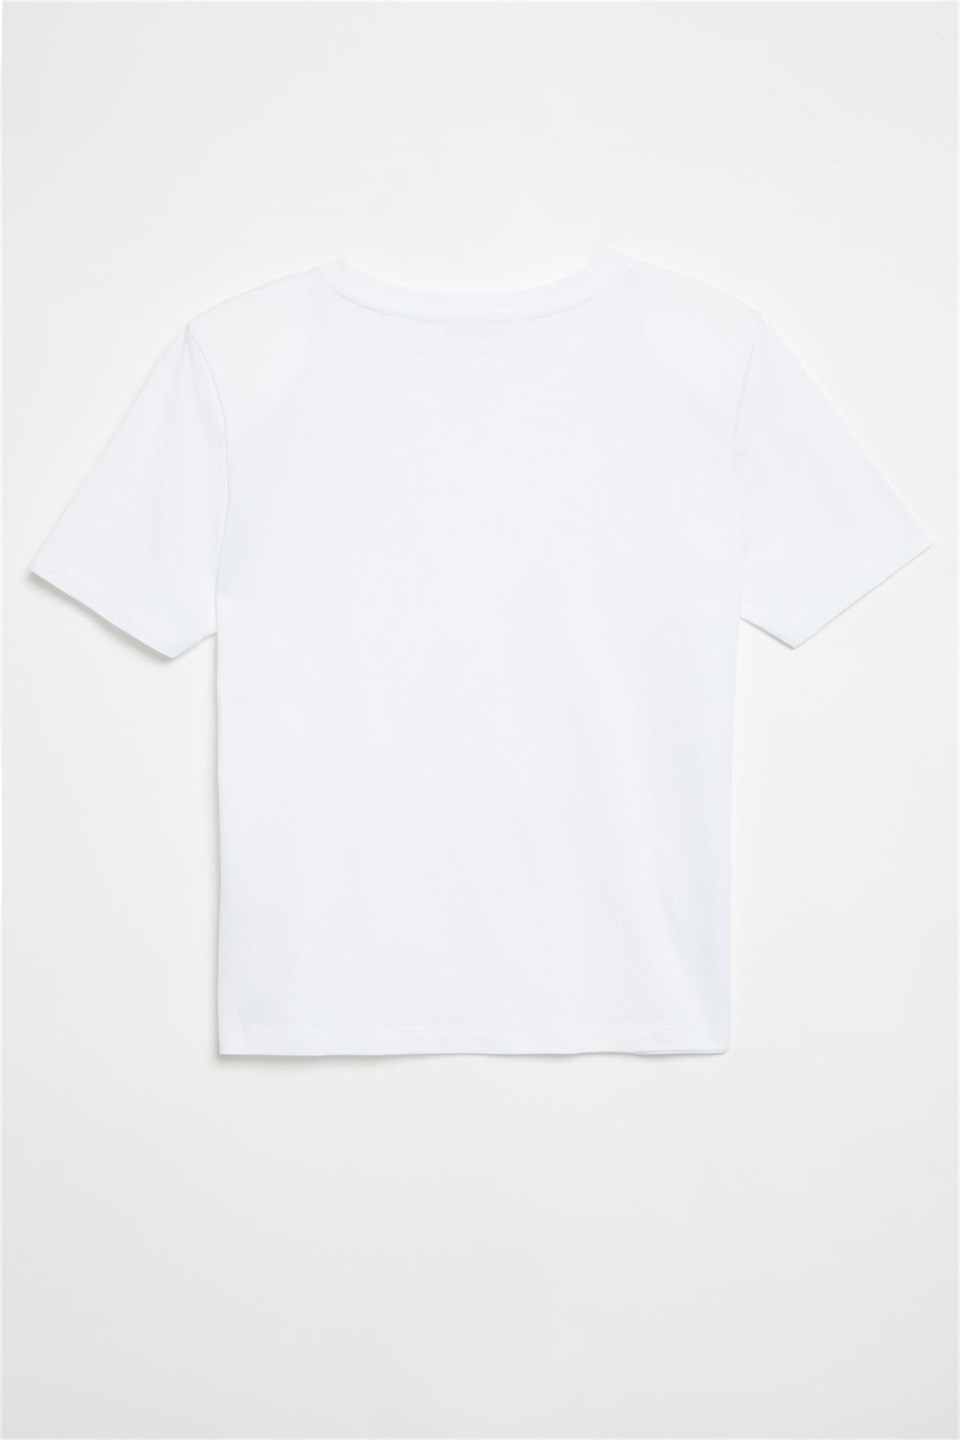 HANNAH Kadın Beyaz Düz Renk Yuvarlak Yaka Comfort Fit T-Shirt